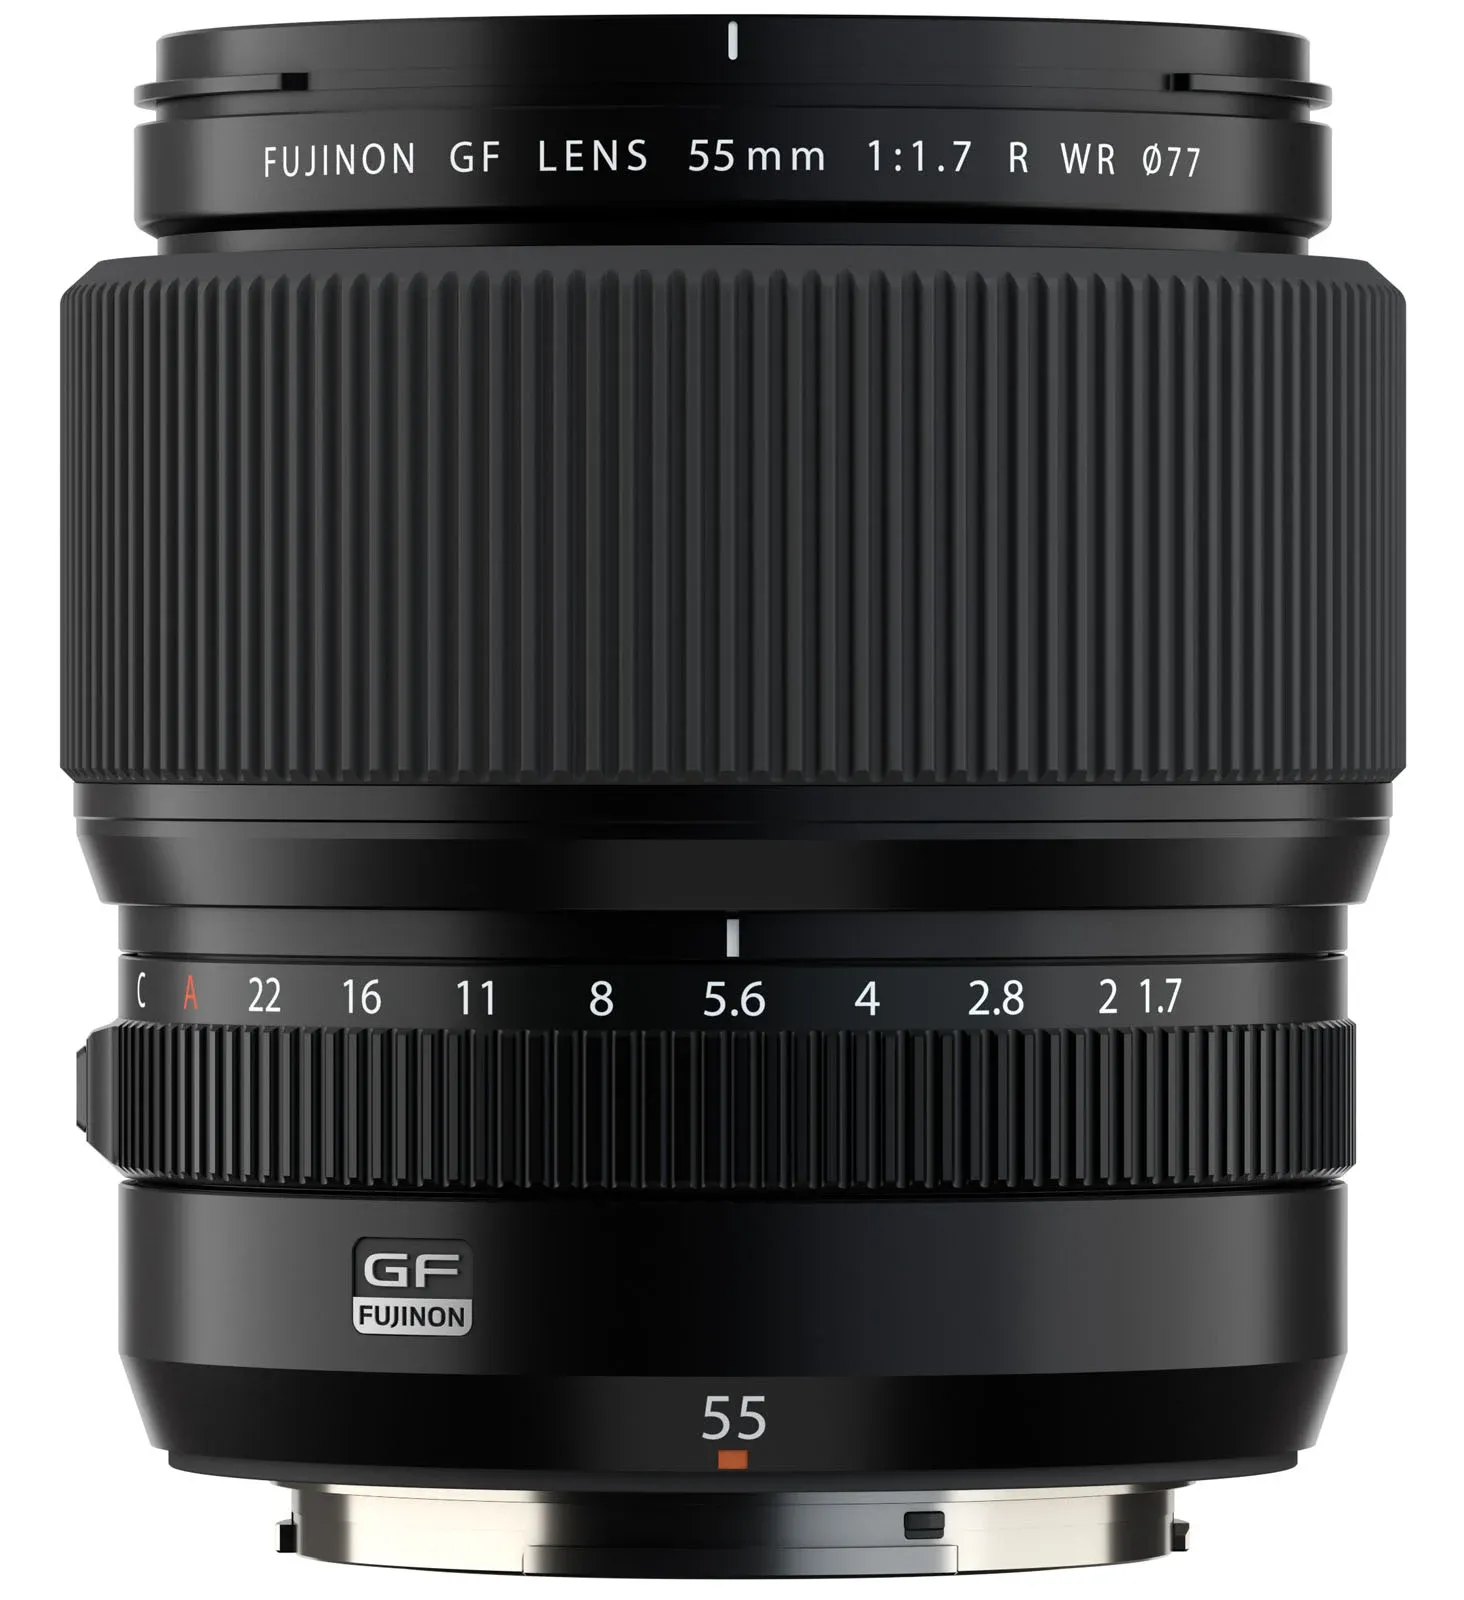 Fujifilm ra mắt ống kính GF 55mm F1.7 R WR mới